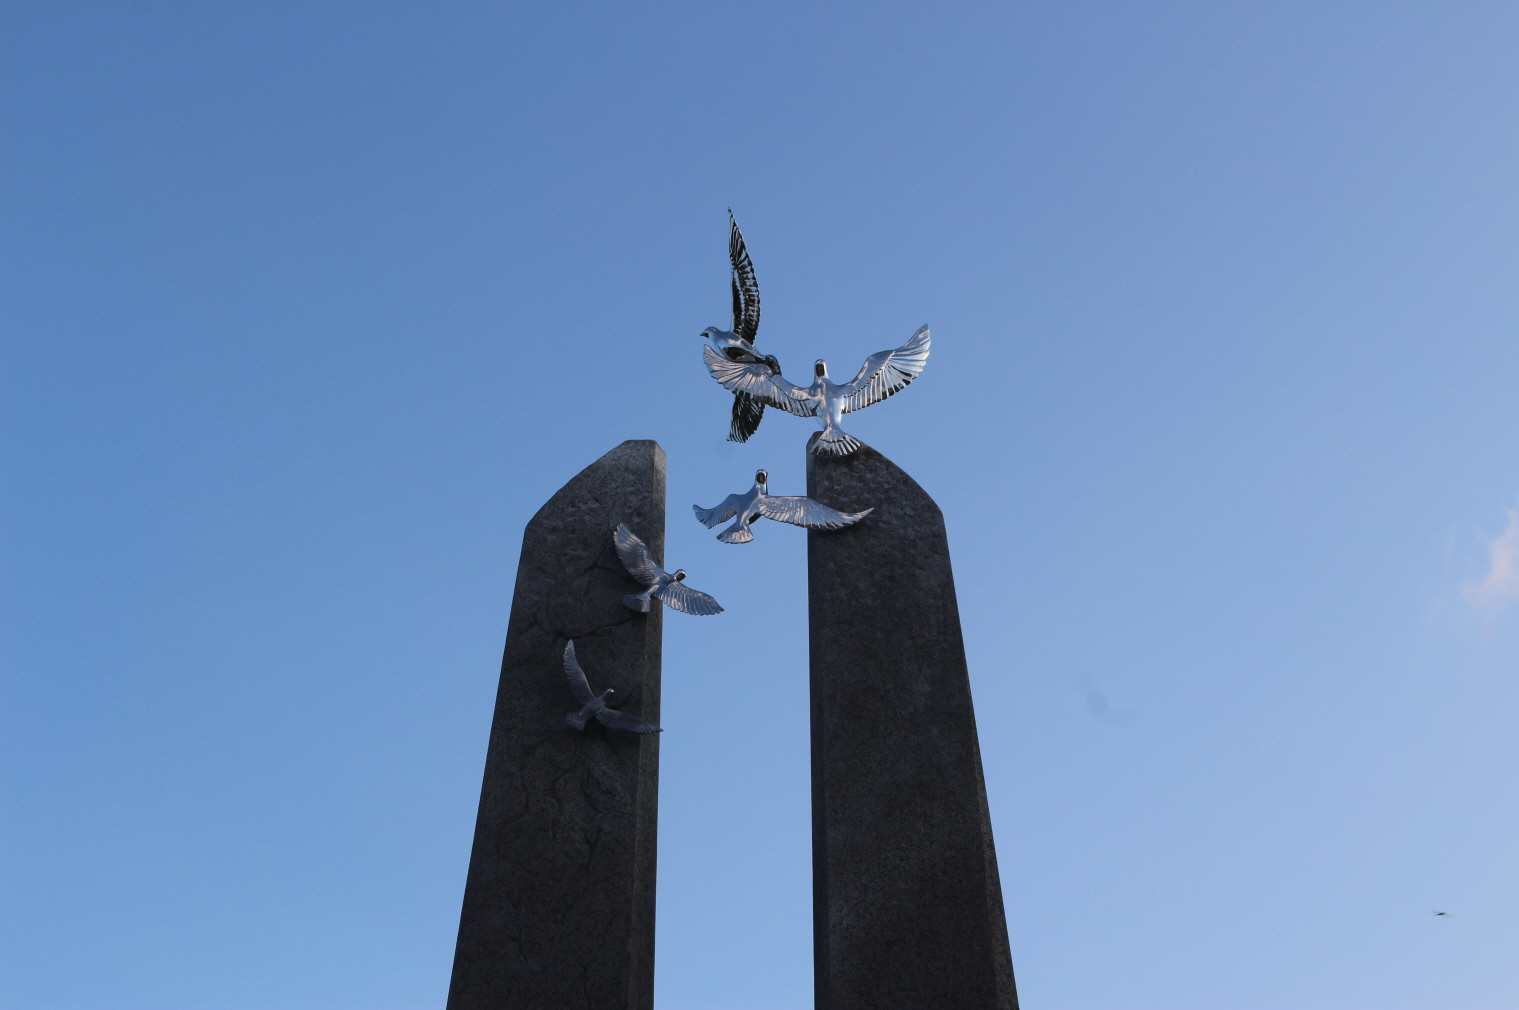 추도탑 주탑 위에 올려져 있는 평화의 새. 강제동원의 고난을 나타내는 제일 아래의 작고 검은 새에서 크게 날개를 펼치며 창공으로 비상하고 있다.